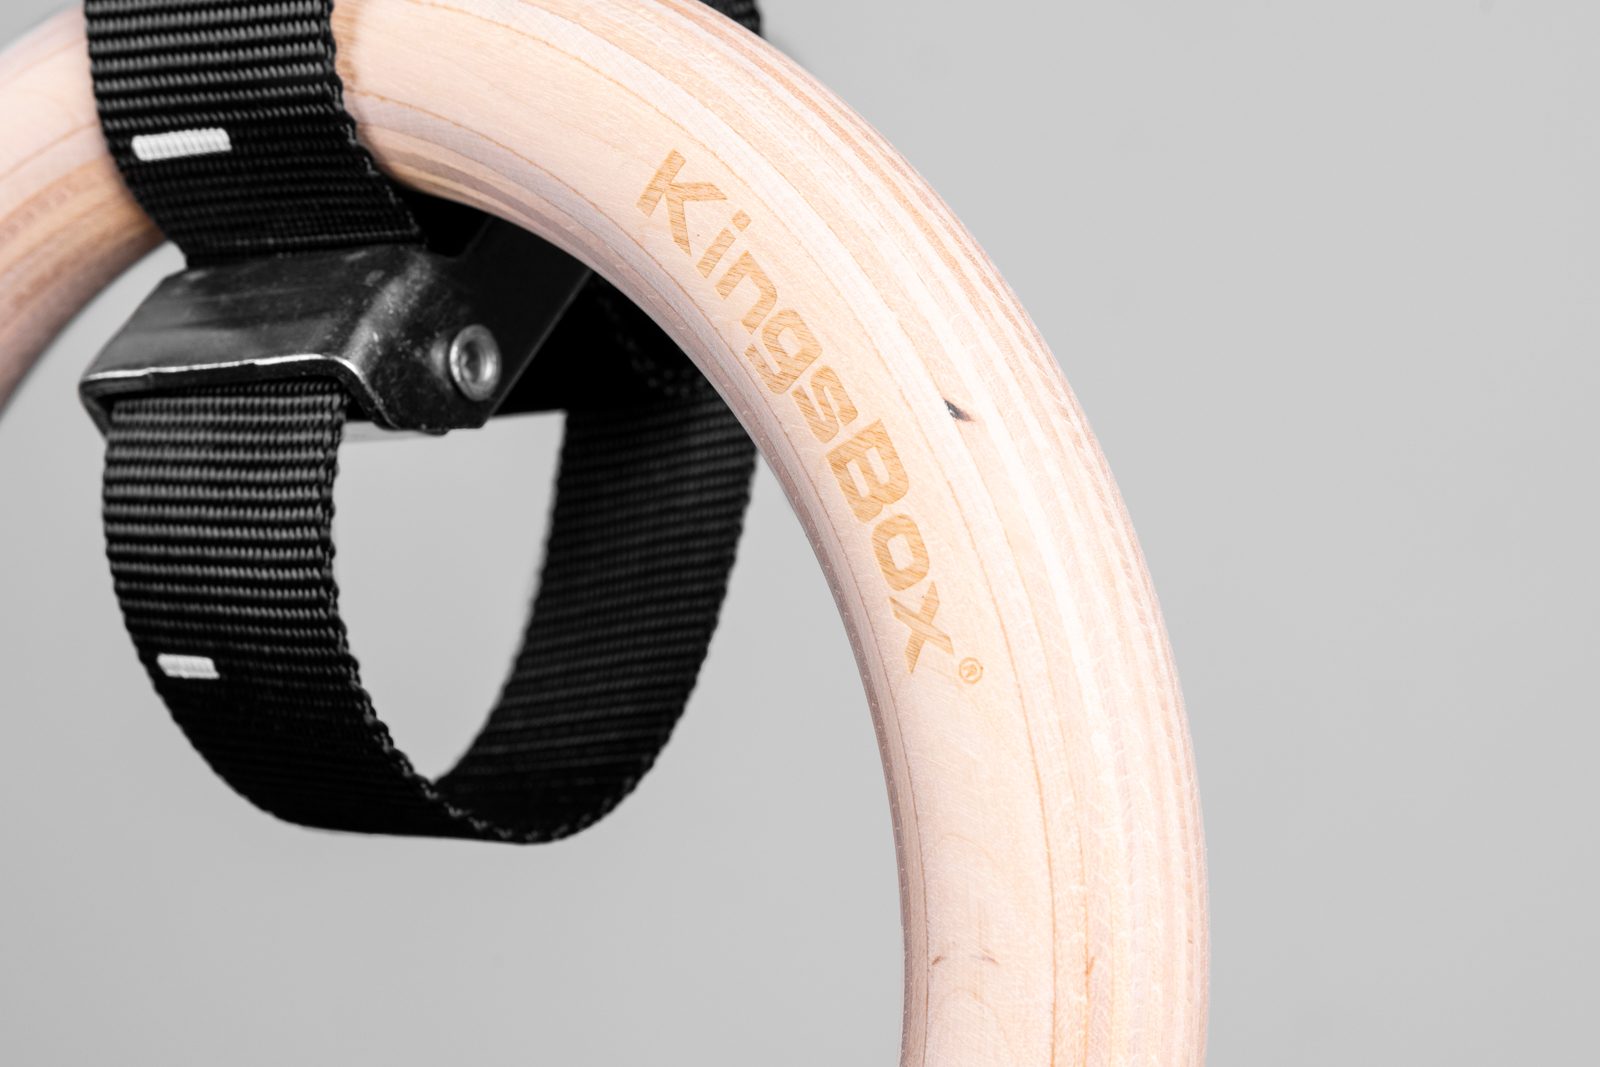 KingsBox Wooden Gymnastic Rings | KingsBox